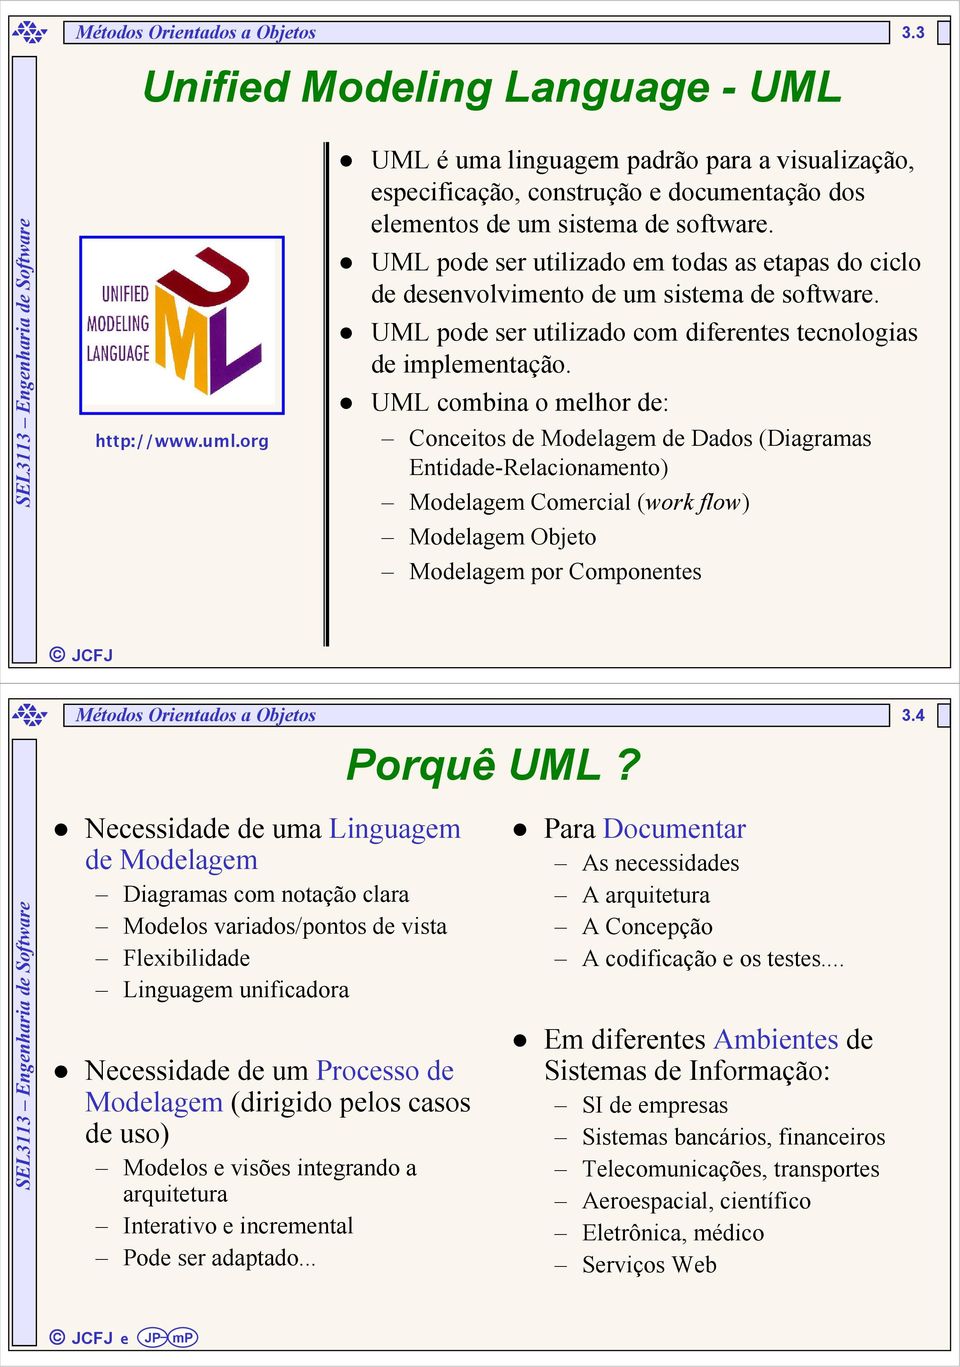 UML pode ser utilizado em todas as etapas do ciclo de desenvolvimento de um sistema de software. UML pode ser utilizado com diferentes tecnologias de implementação.